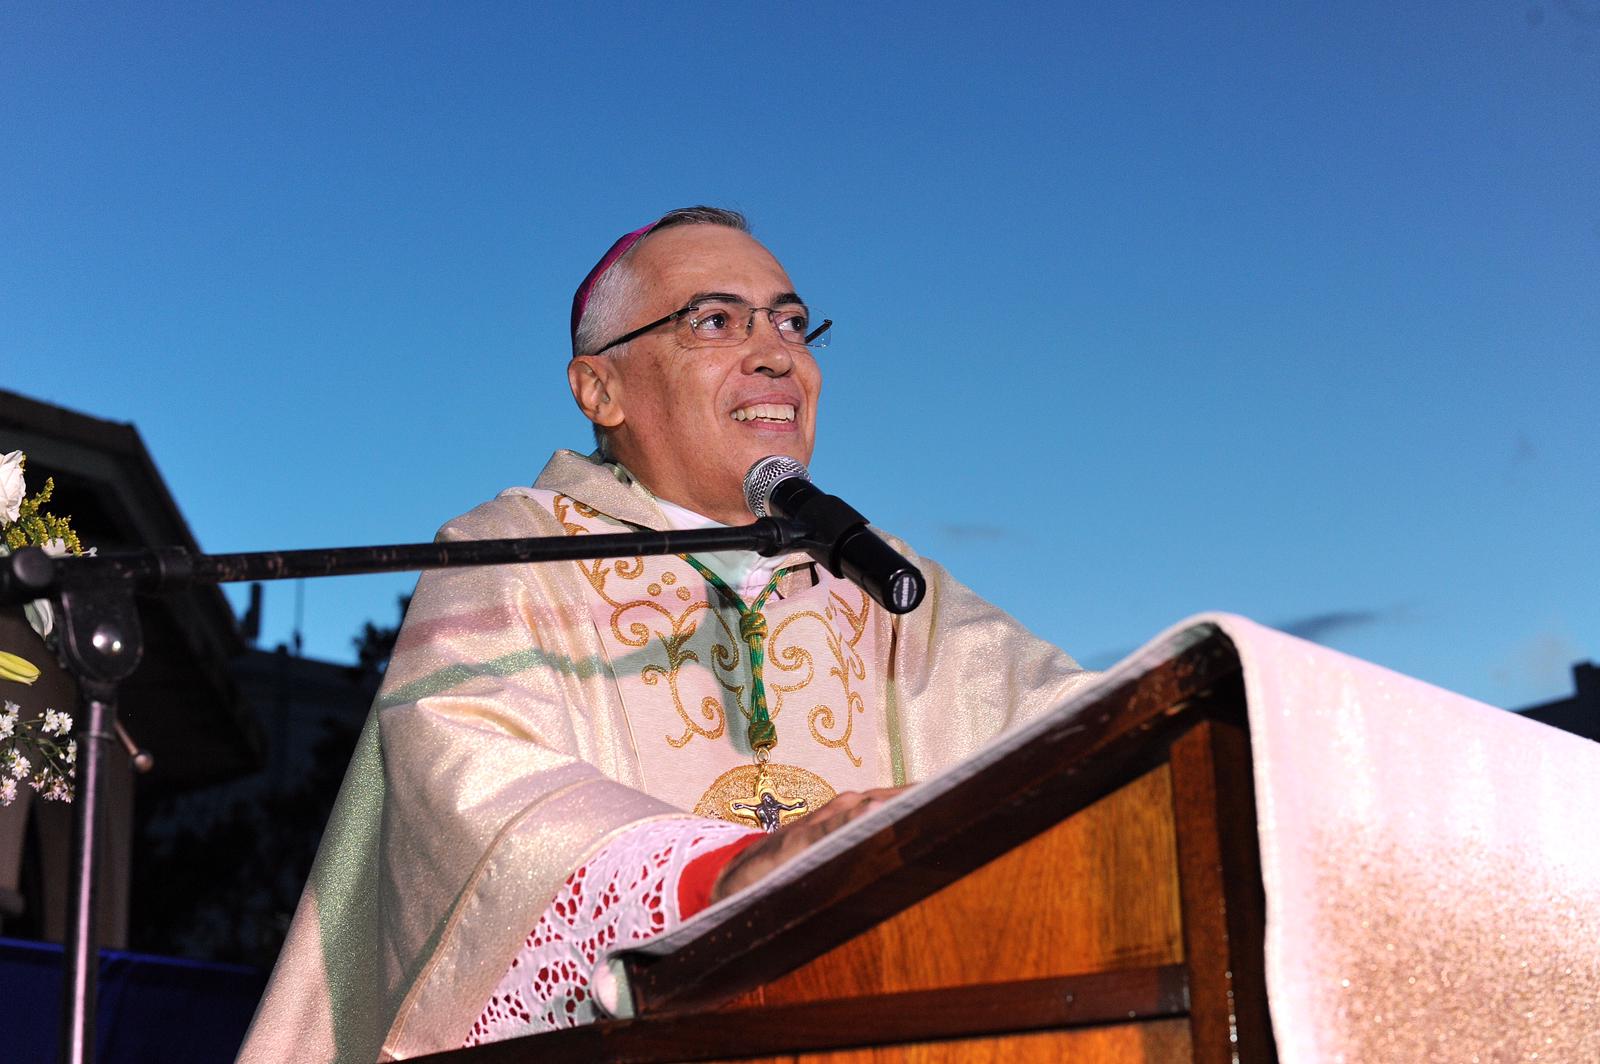 Obispo de Arecibo envía carta al gobernador electo “para que detenga imposición de ideología de género”